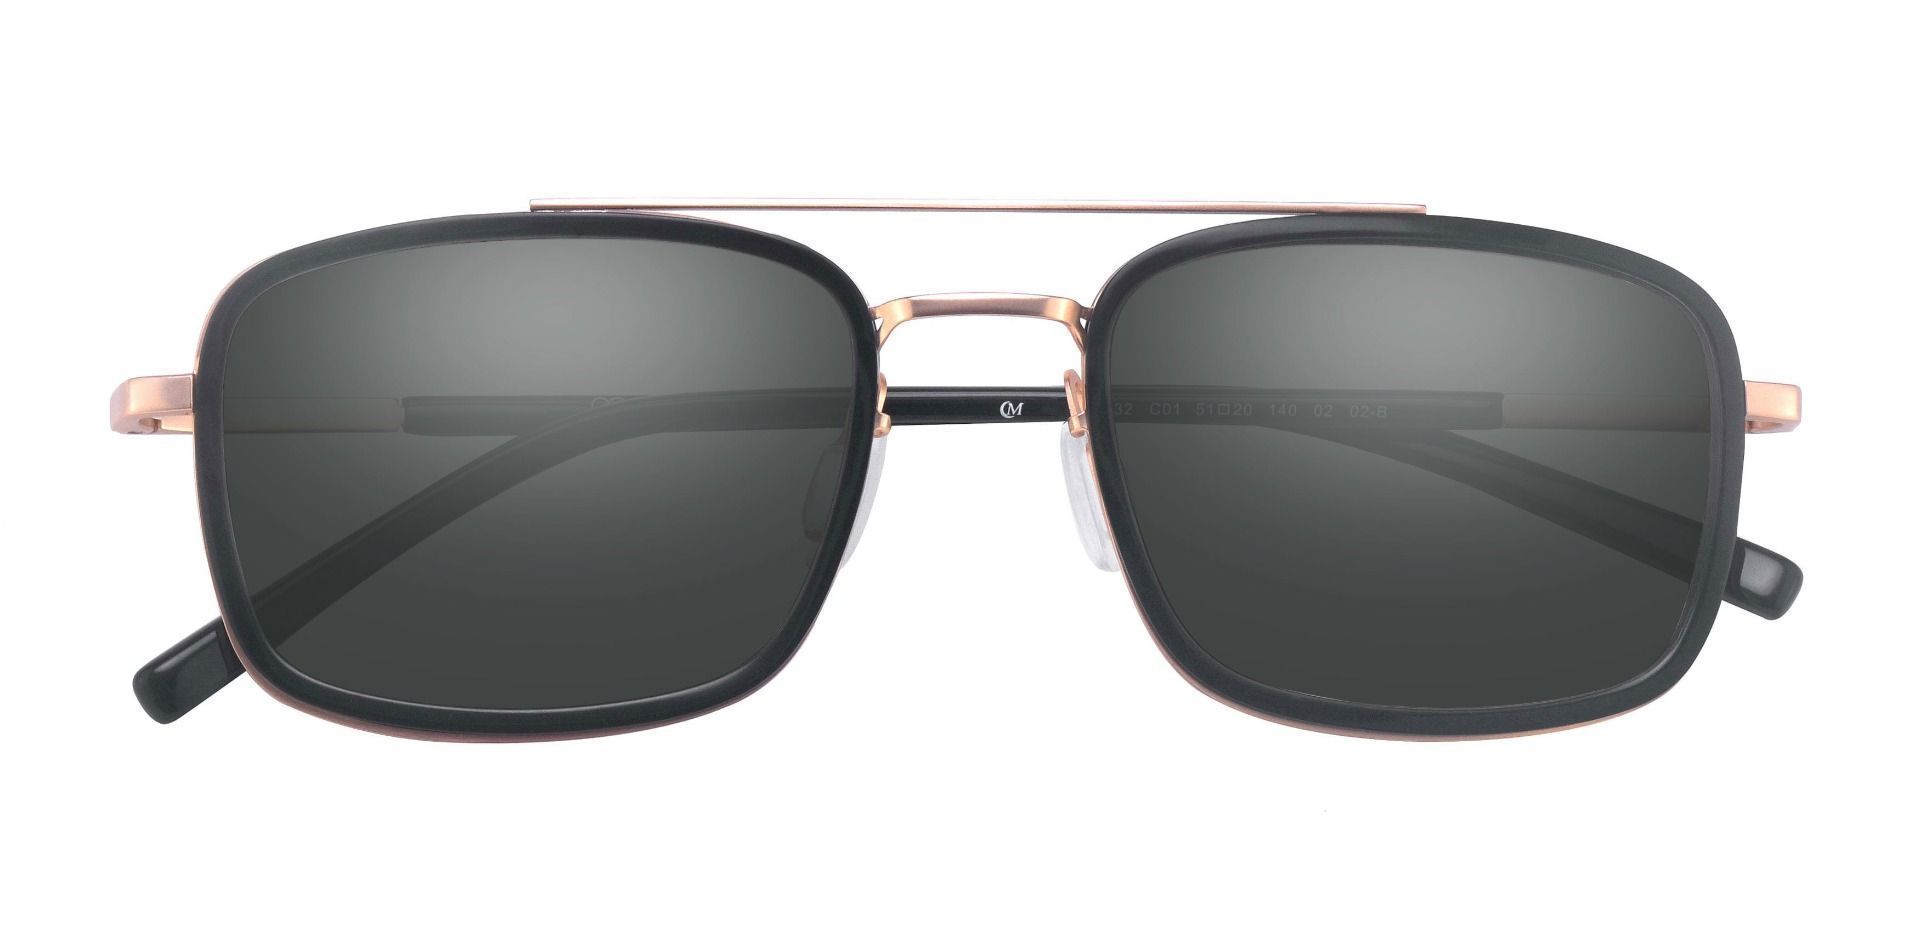 Margot Aviator Prescription Sunglasses - Black Frame With Gray Lenses ...